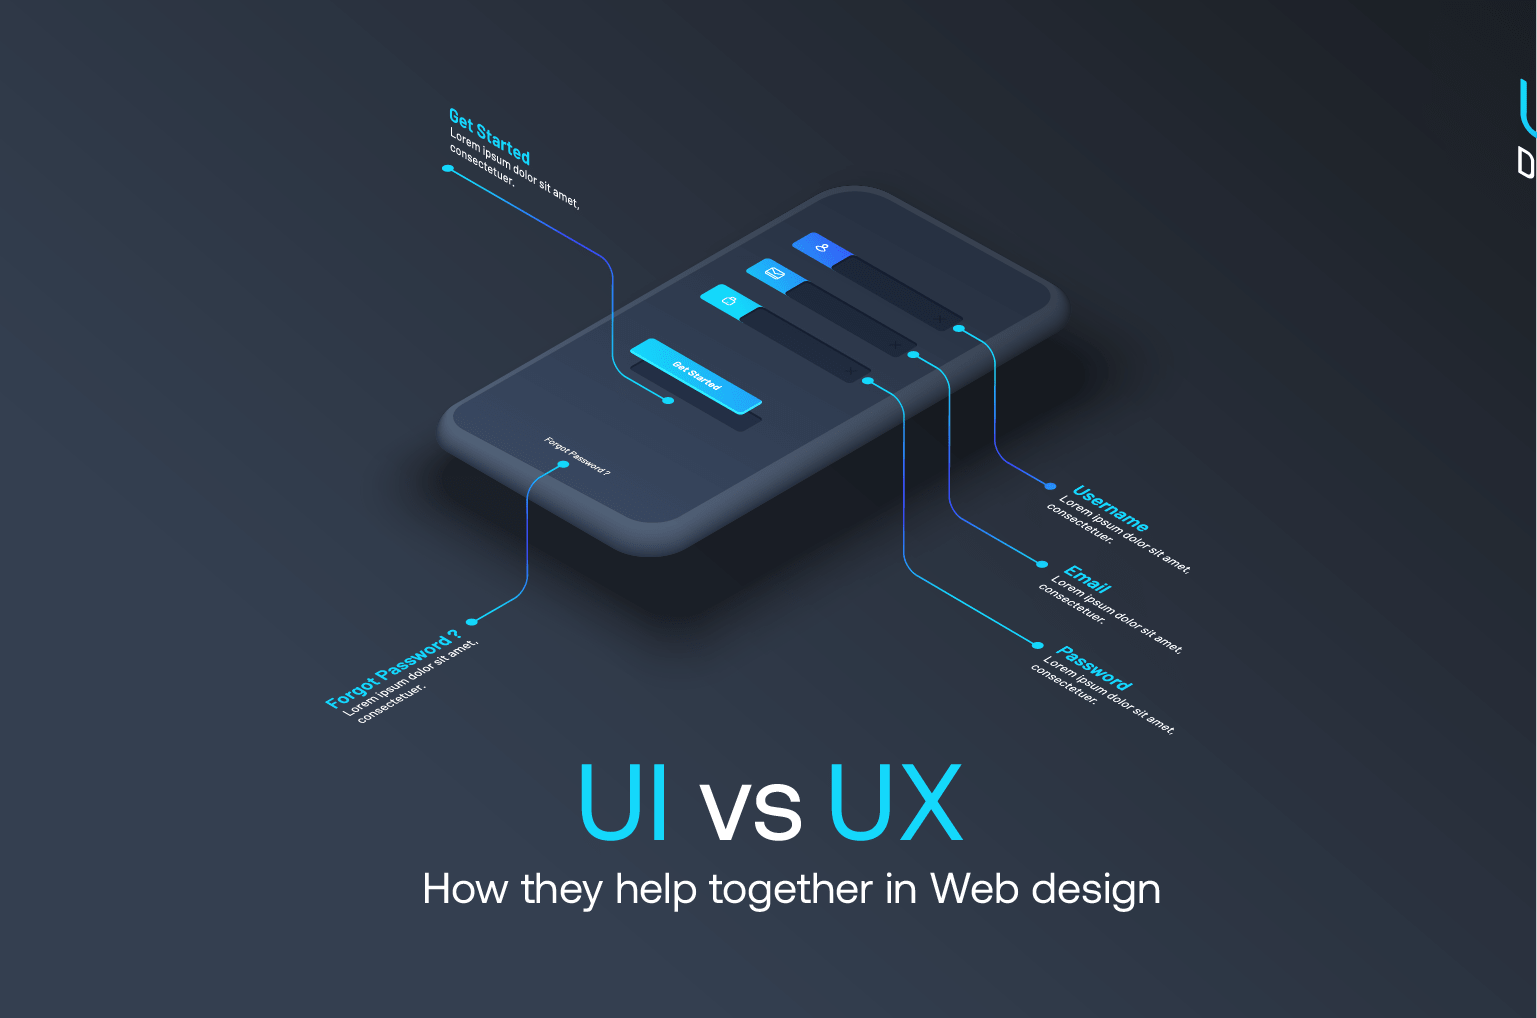 صفحات محصول را با استفاده از نظر یک متخصص  UI / UX طراحی کنید